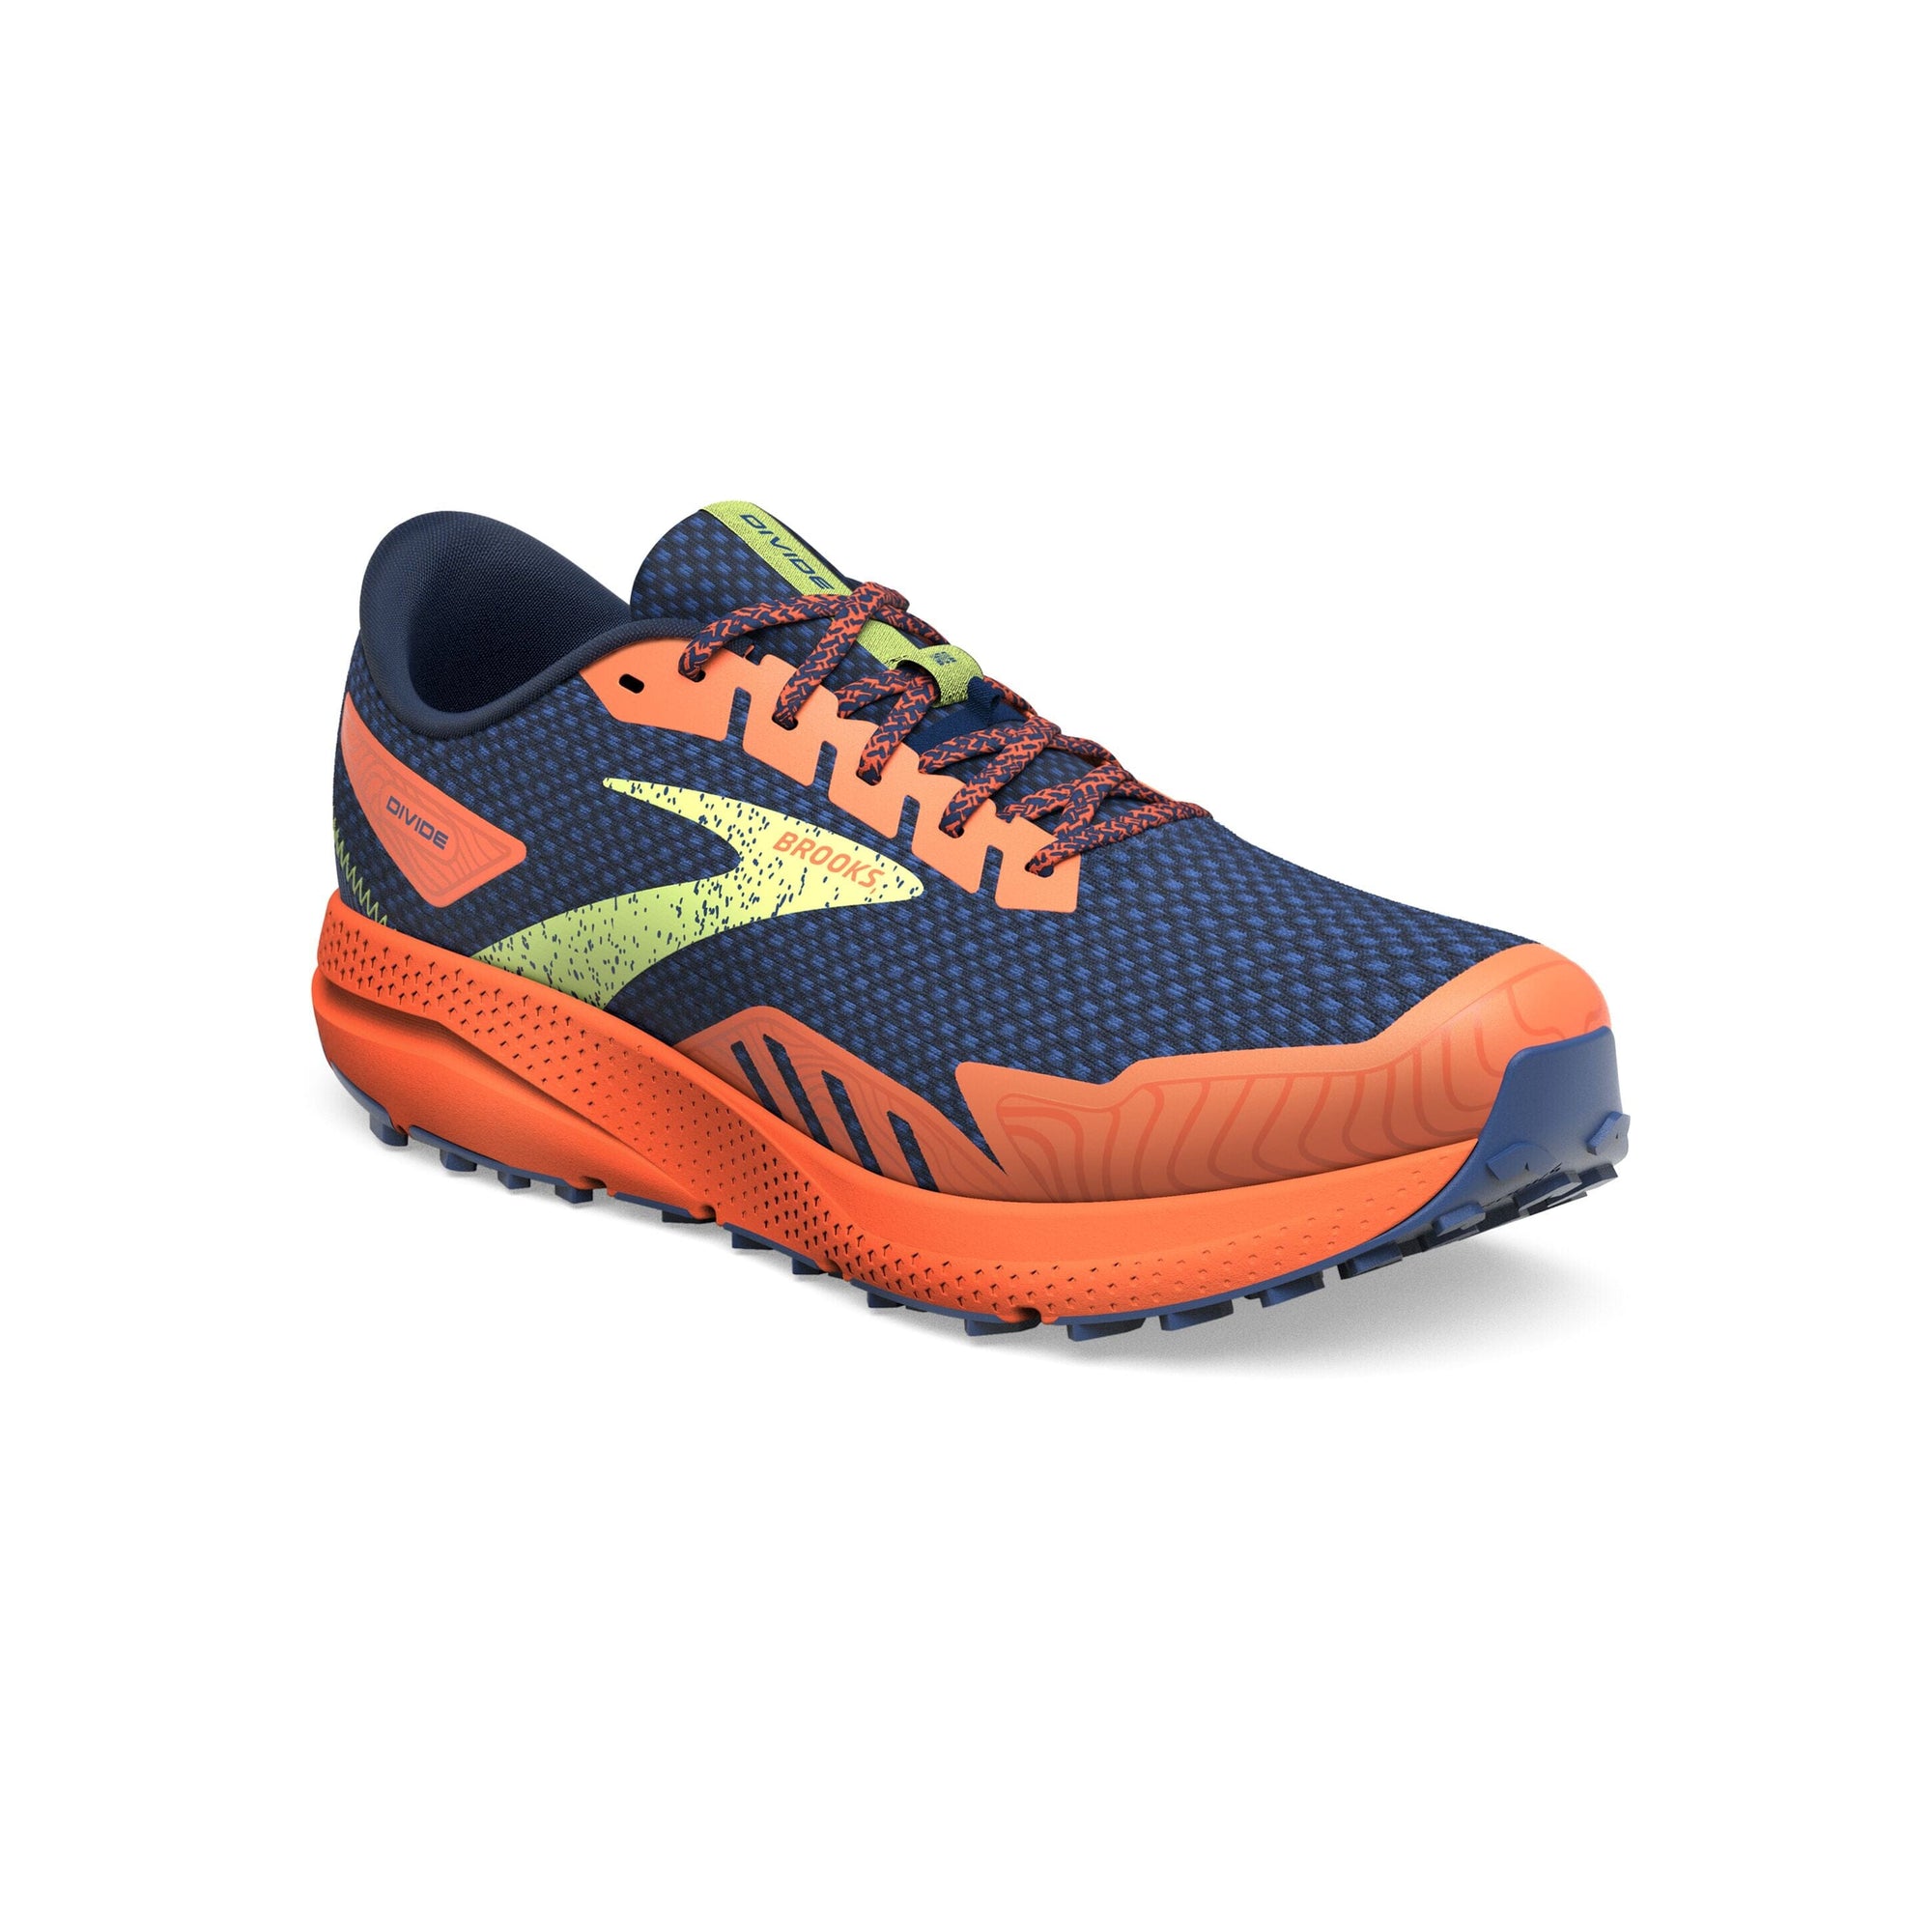 Brooks Men's Divide 4 Trail Running Shoes Navy/Firecracker/Sharp Green US 9.5 